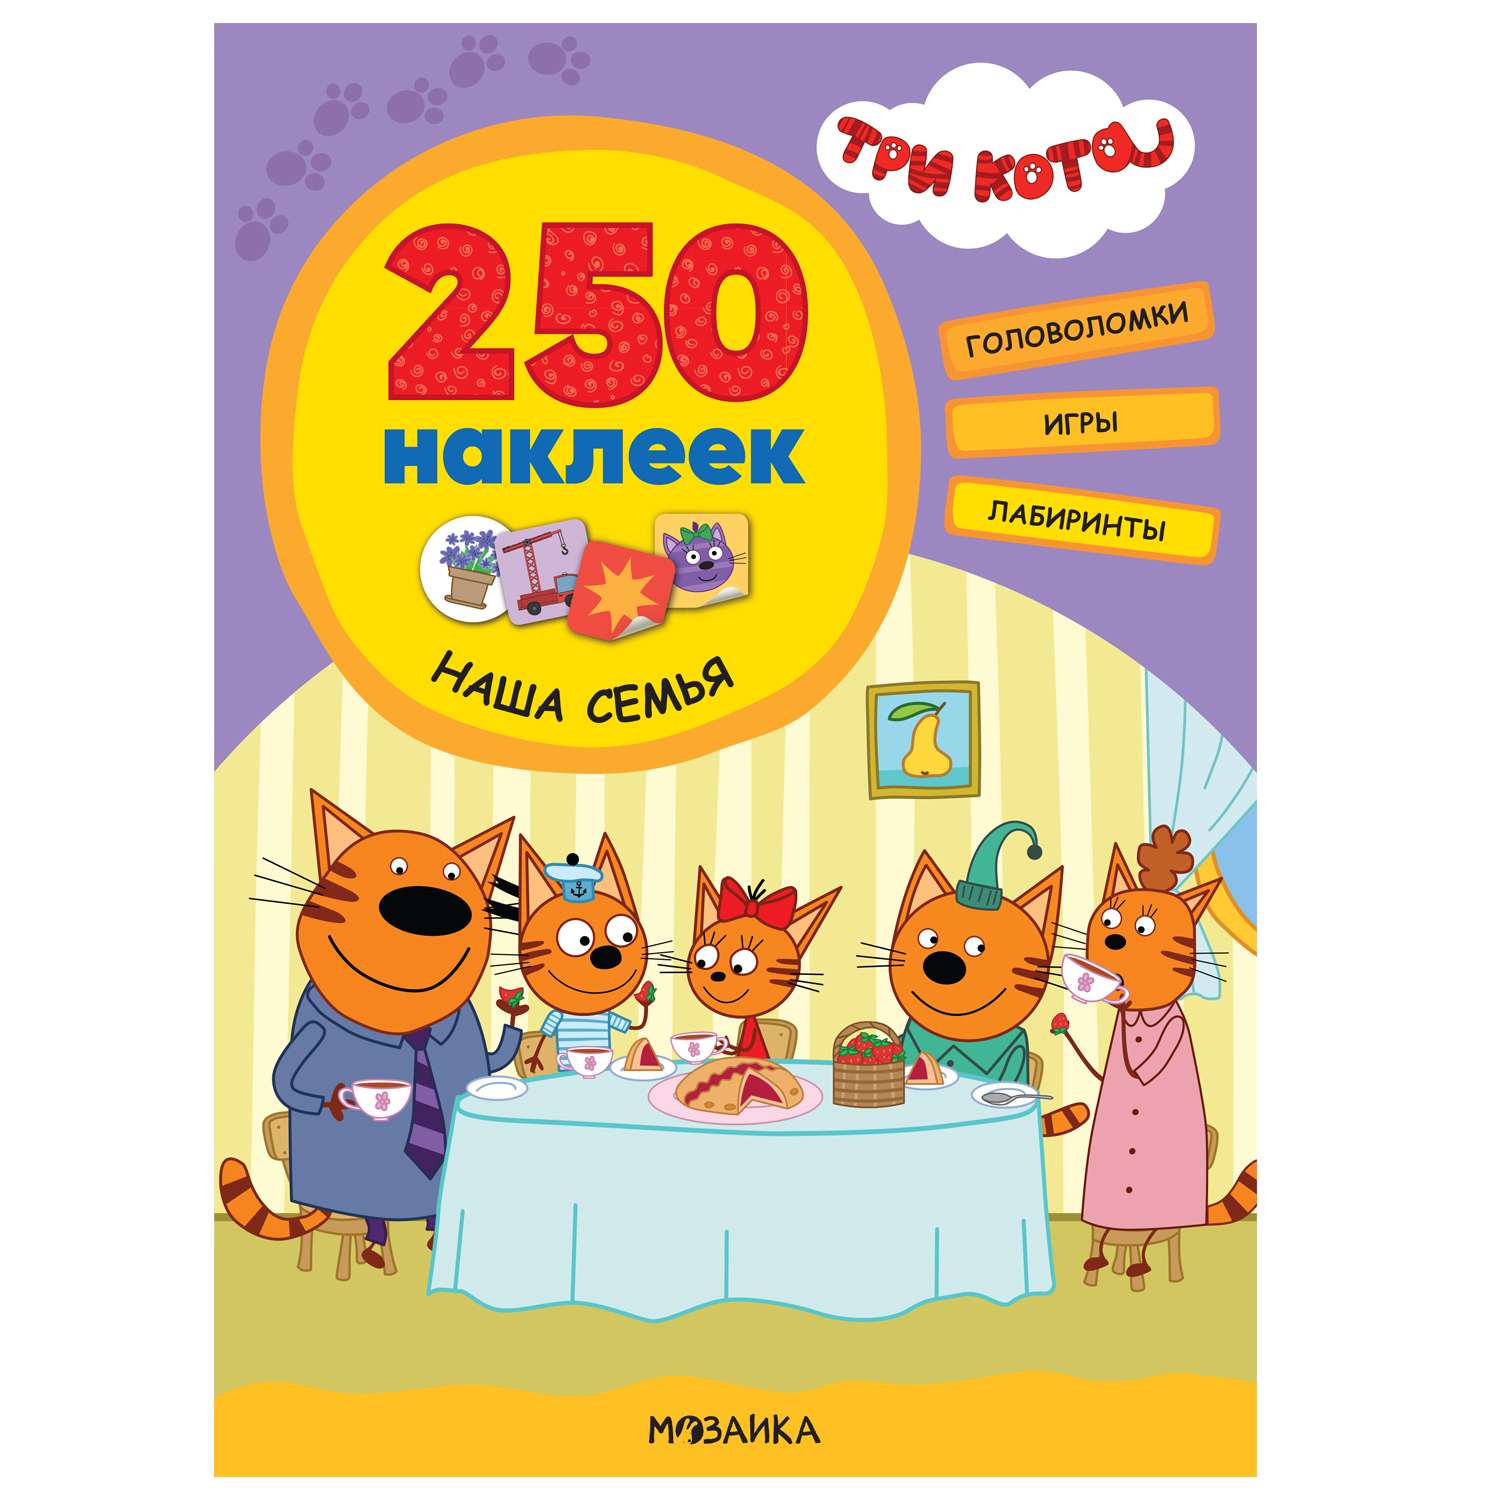 Книга МОЗАИКА kids Три кота 250наклеек Наша семья - фото 1